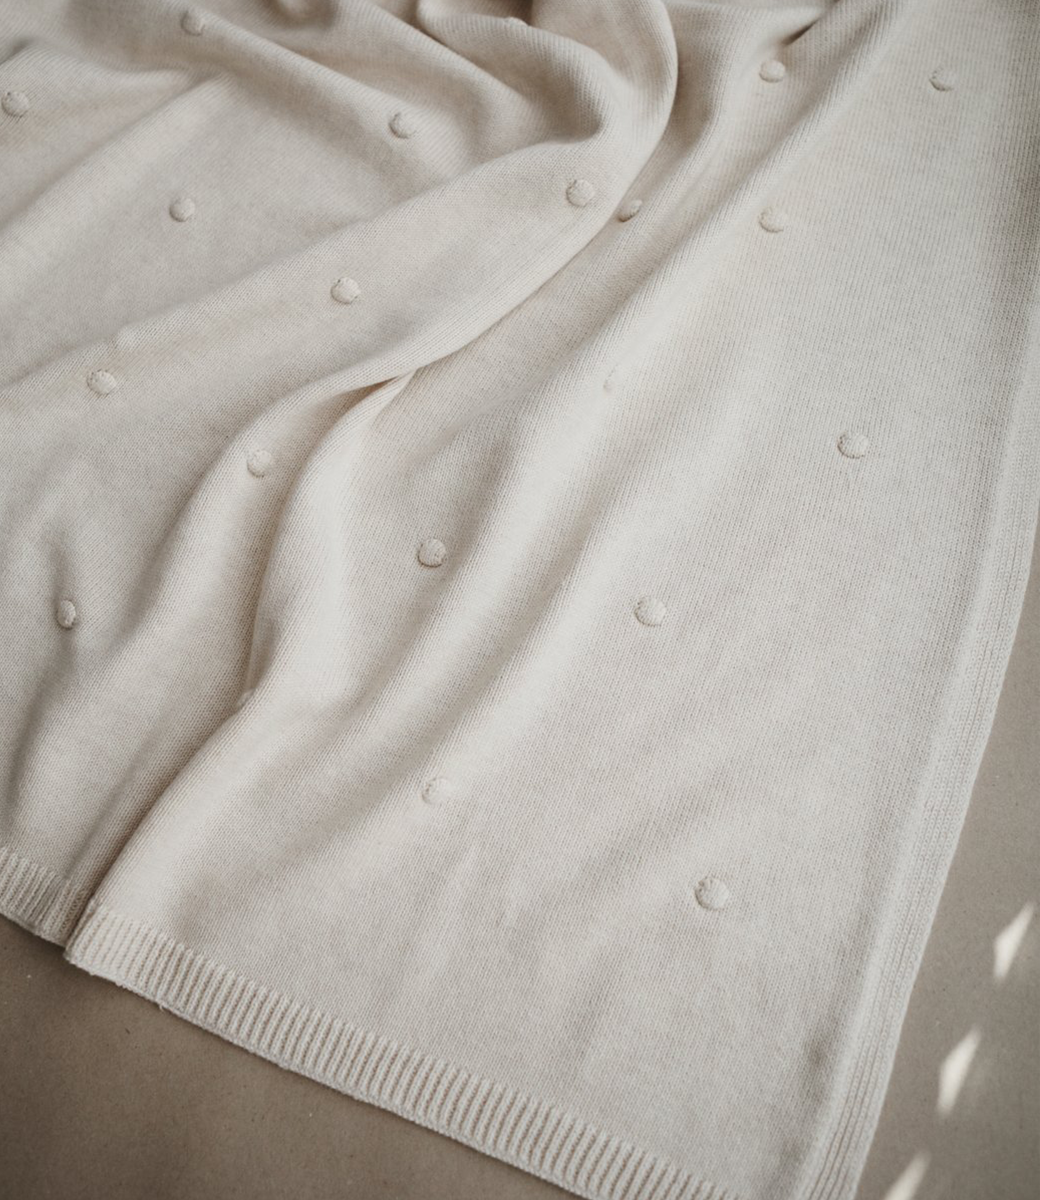 Knit blanket // Dots - off white melange